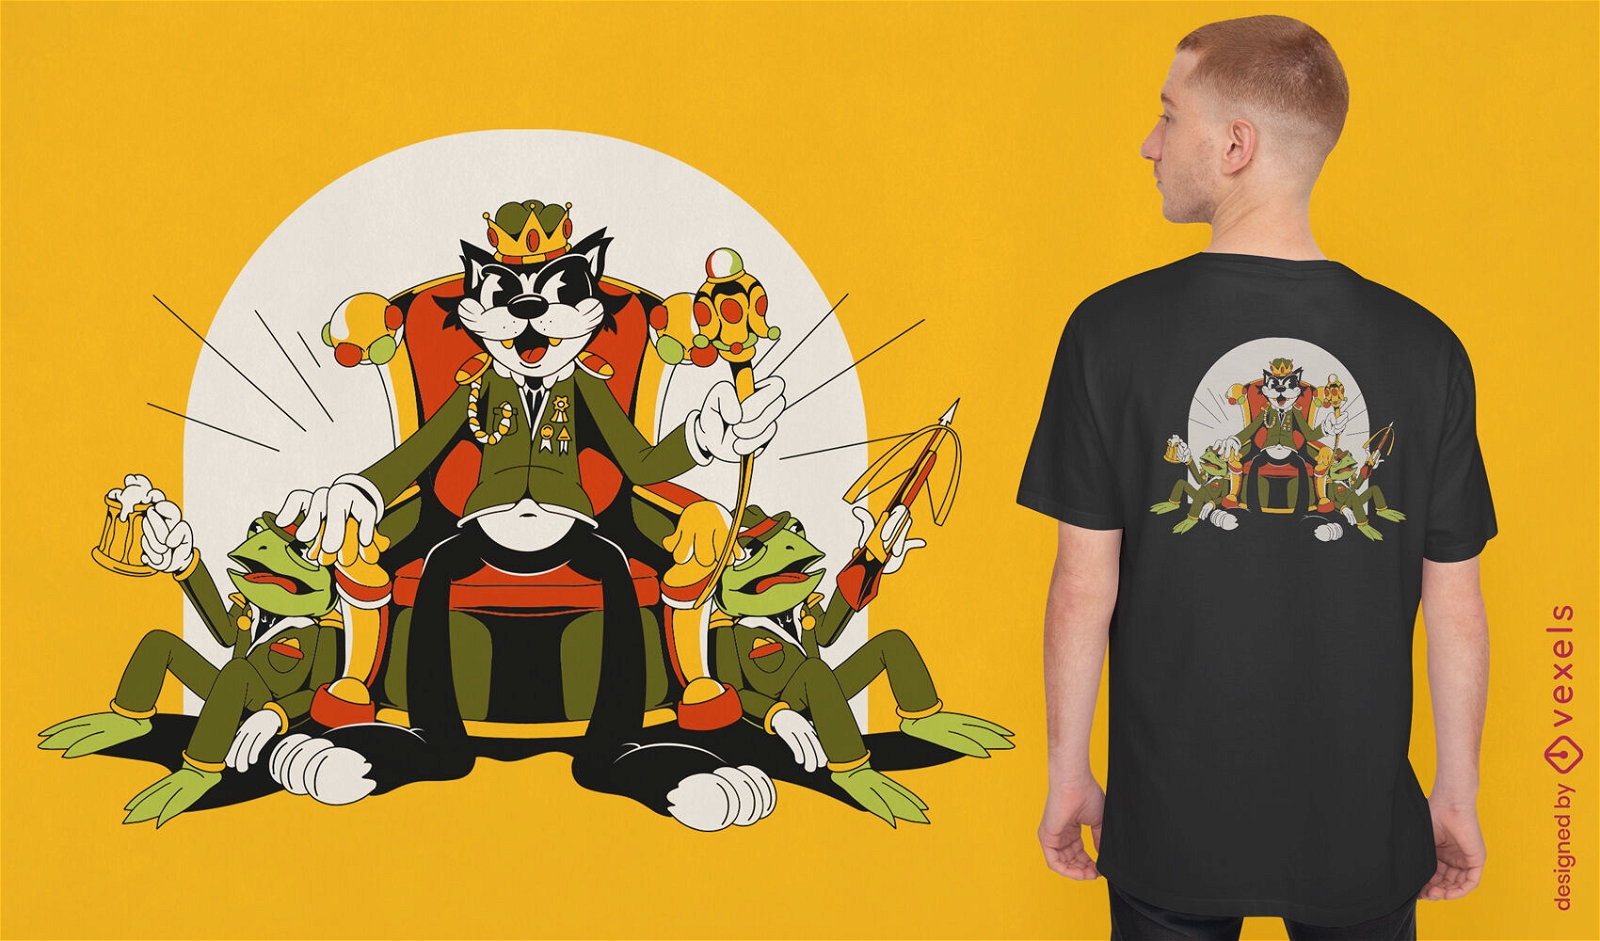 Königliche Katze im T-Shirt-Design mit Schützenuniform